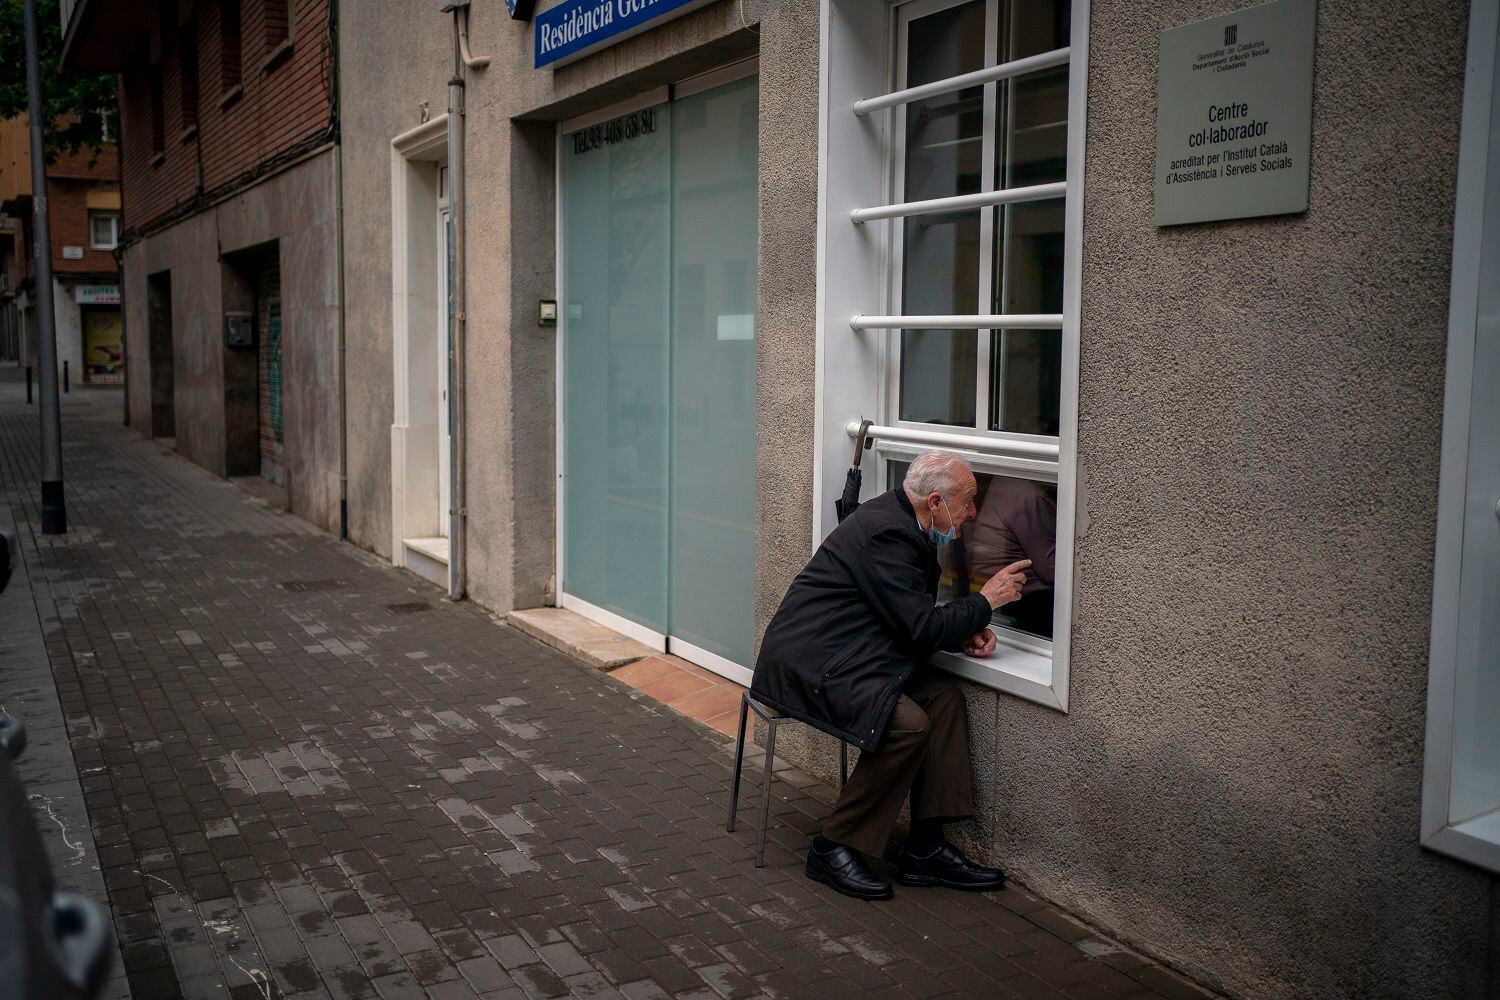 Xavier Antó, de 90 años, habla con su esposa Carmen Panzano, de 92, a través de una ventana en el asilo donde ella vive en Barcelona, España, el 21 de abril de 2021. La casa de ancianos tomó estas medidas para proteger a sus residentes del coronavirus. (AP Foto/Emilio Morenatti)